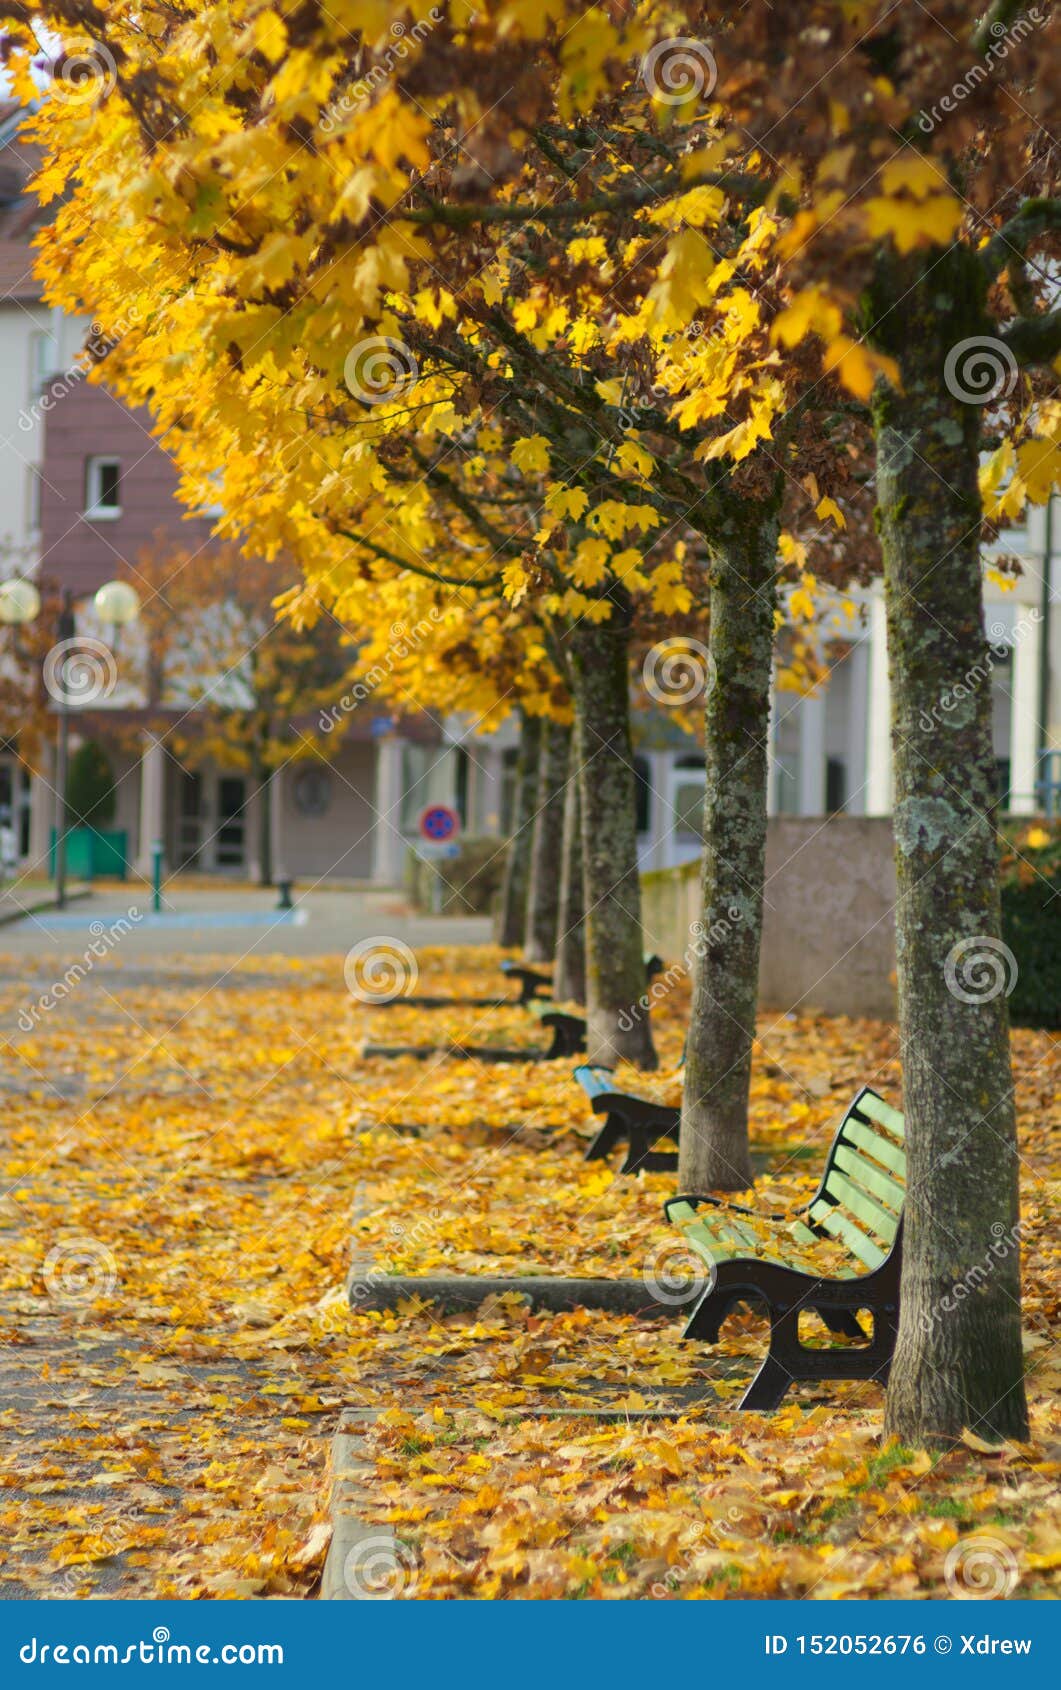 autumn scene in town